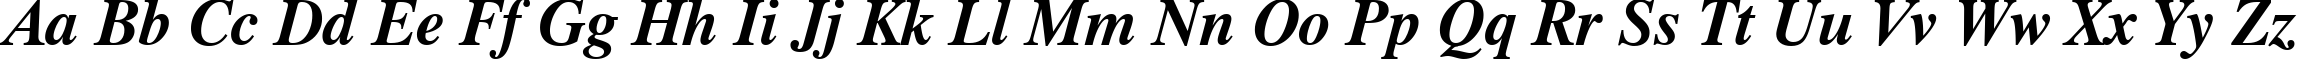 Пример написания английского алфавита шрифтом Dutch 801 Bold Italic BT